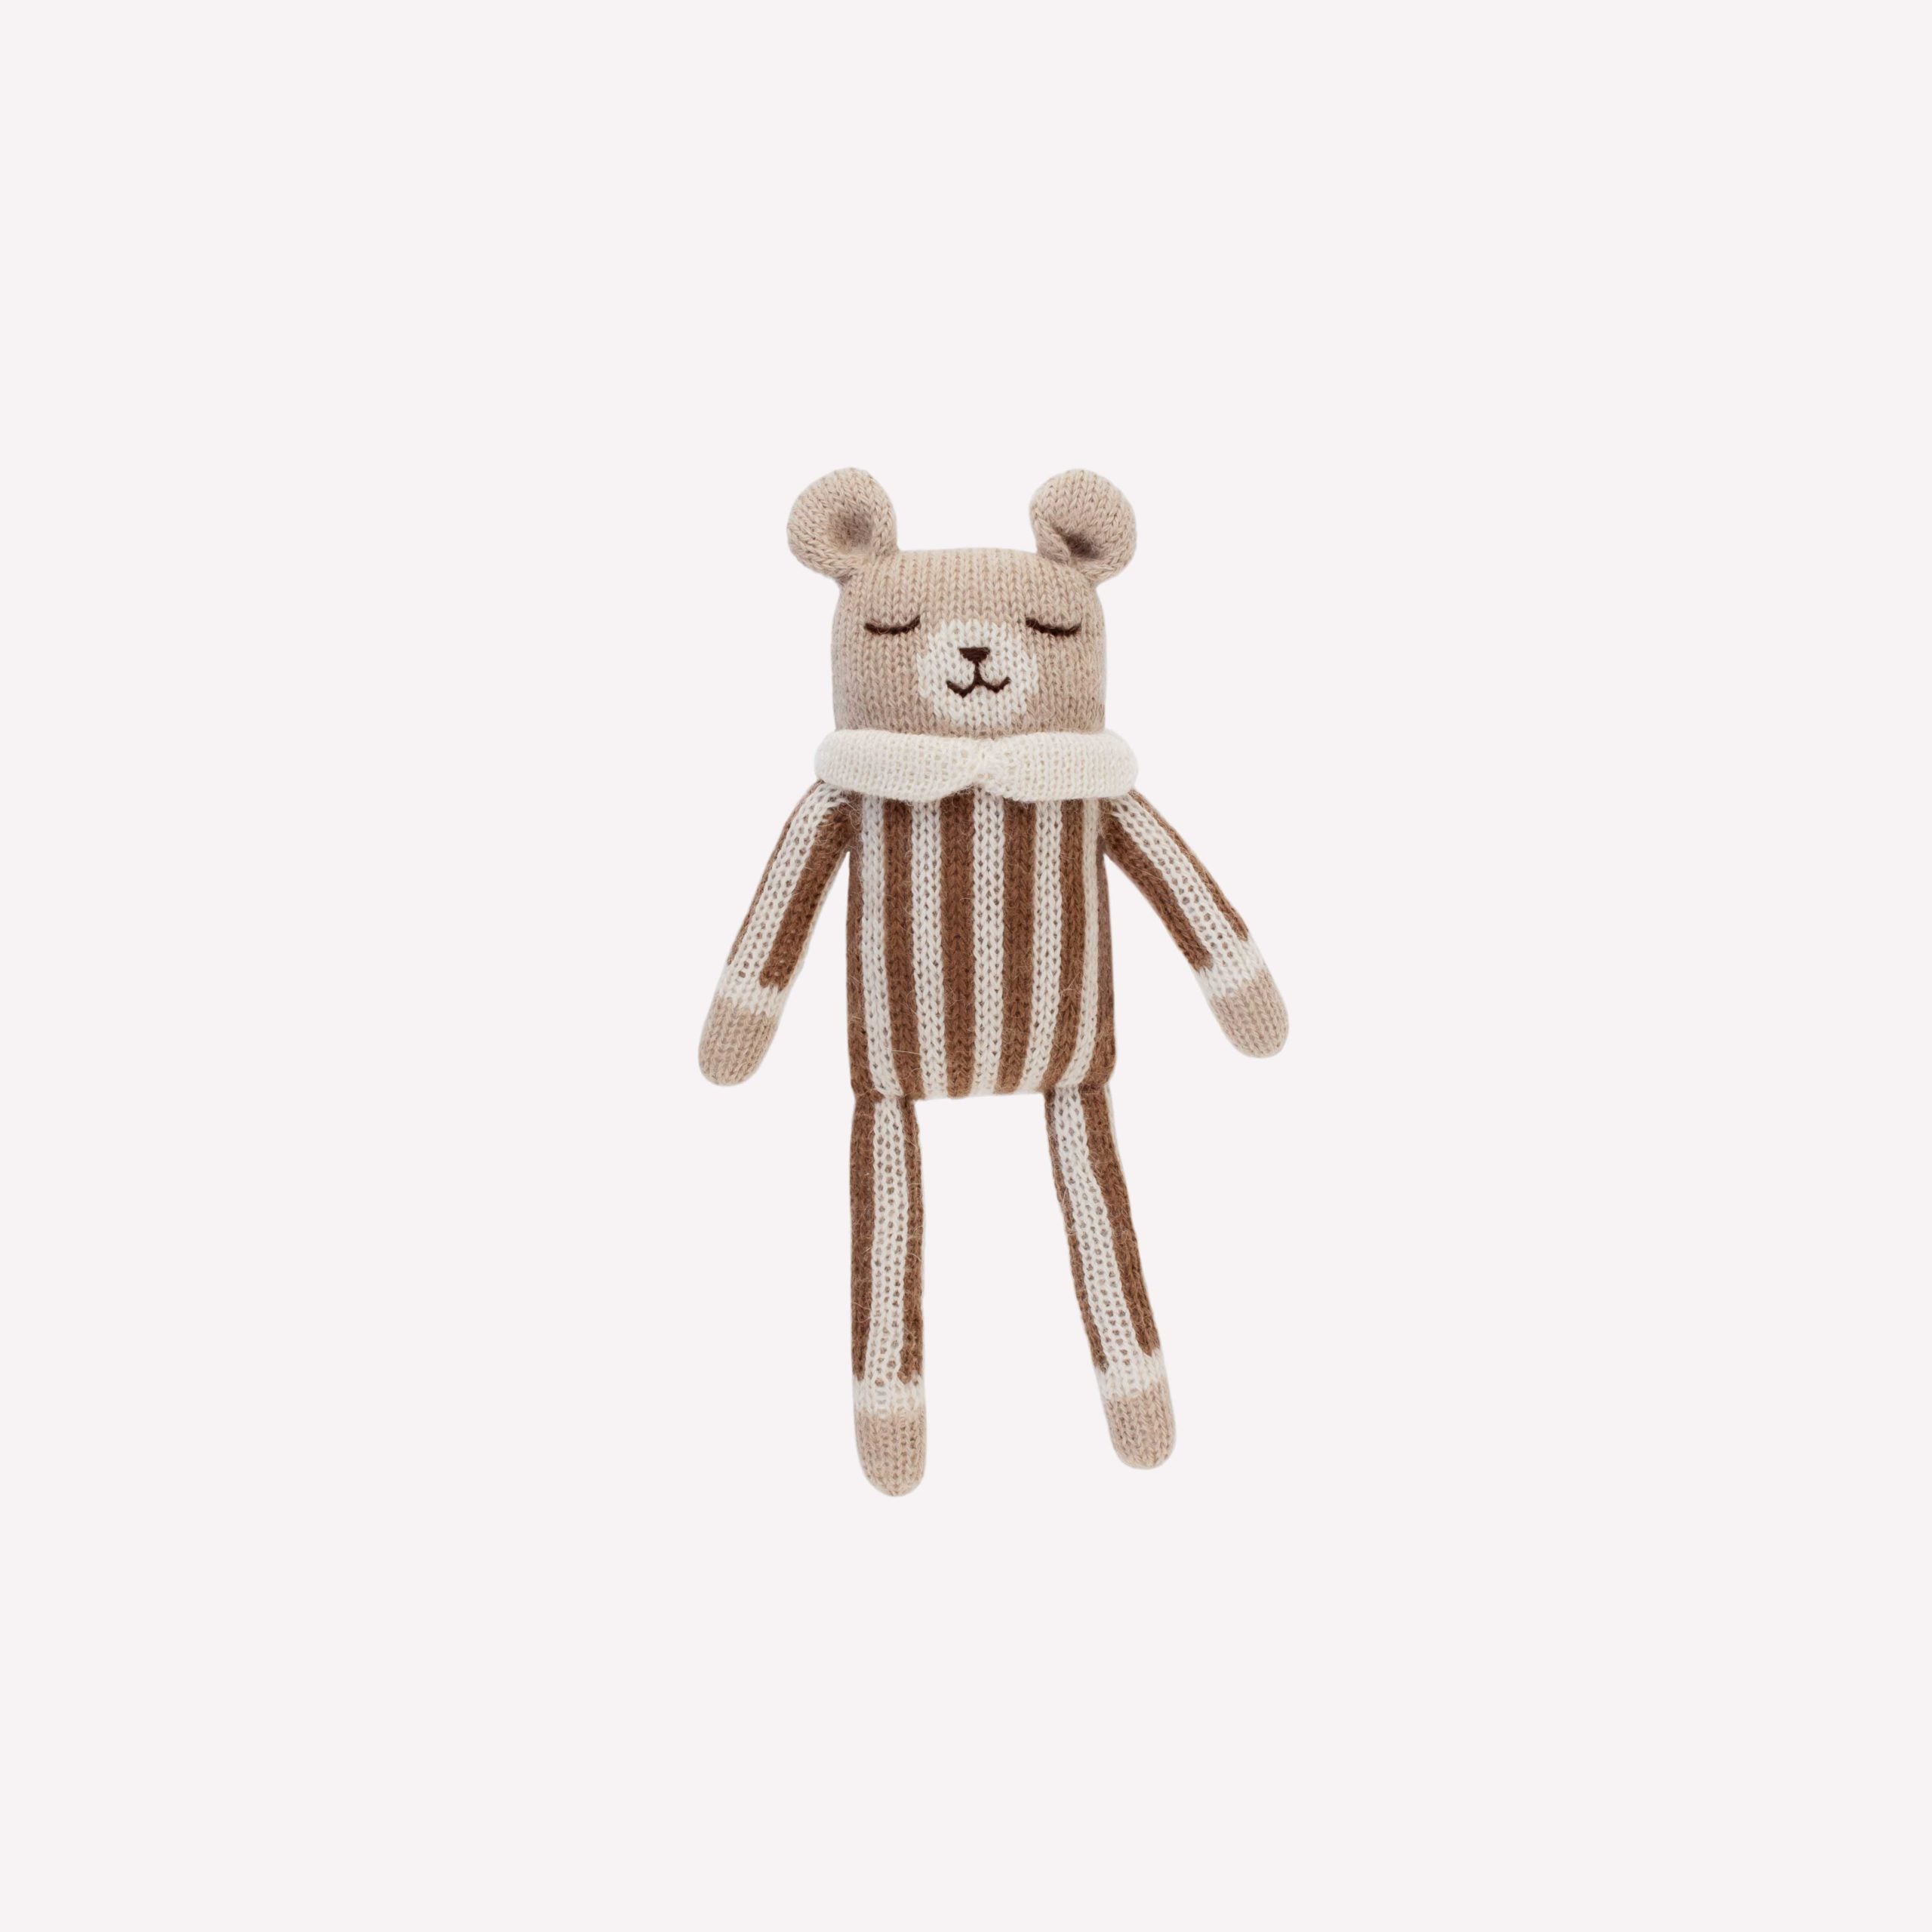 Teddy knit toy